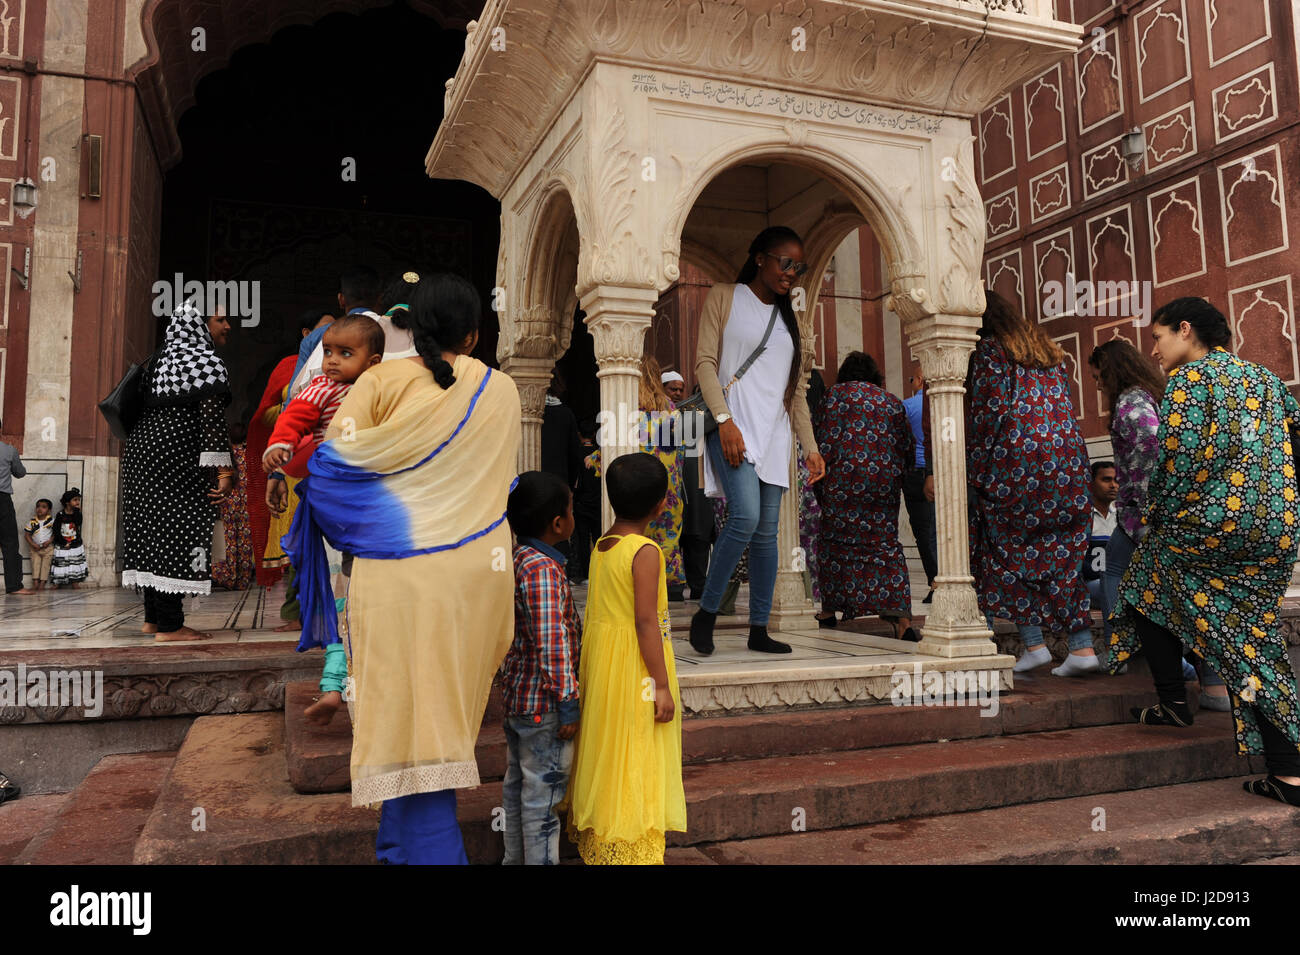 Los turistas posan para fotografías en la Jama Masjid mezquita de Delhi, India Foto de stock